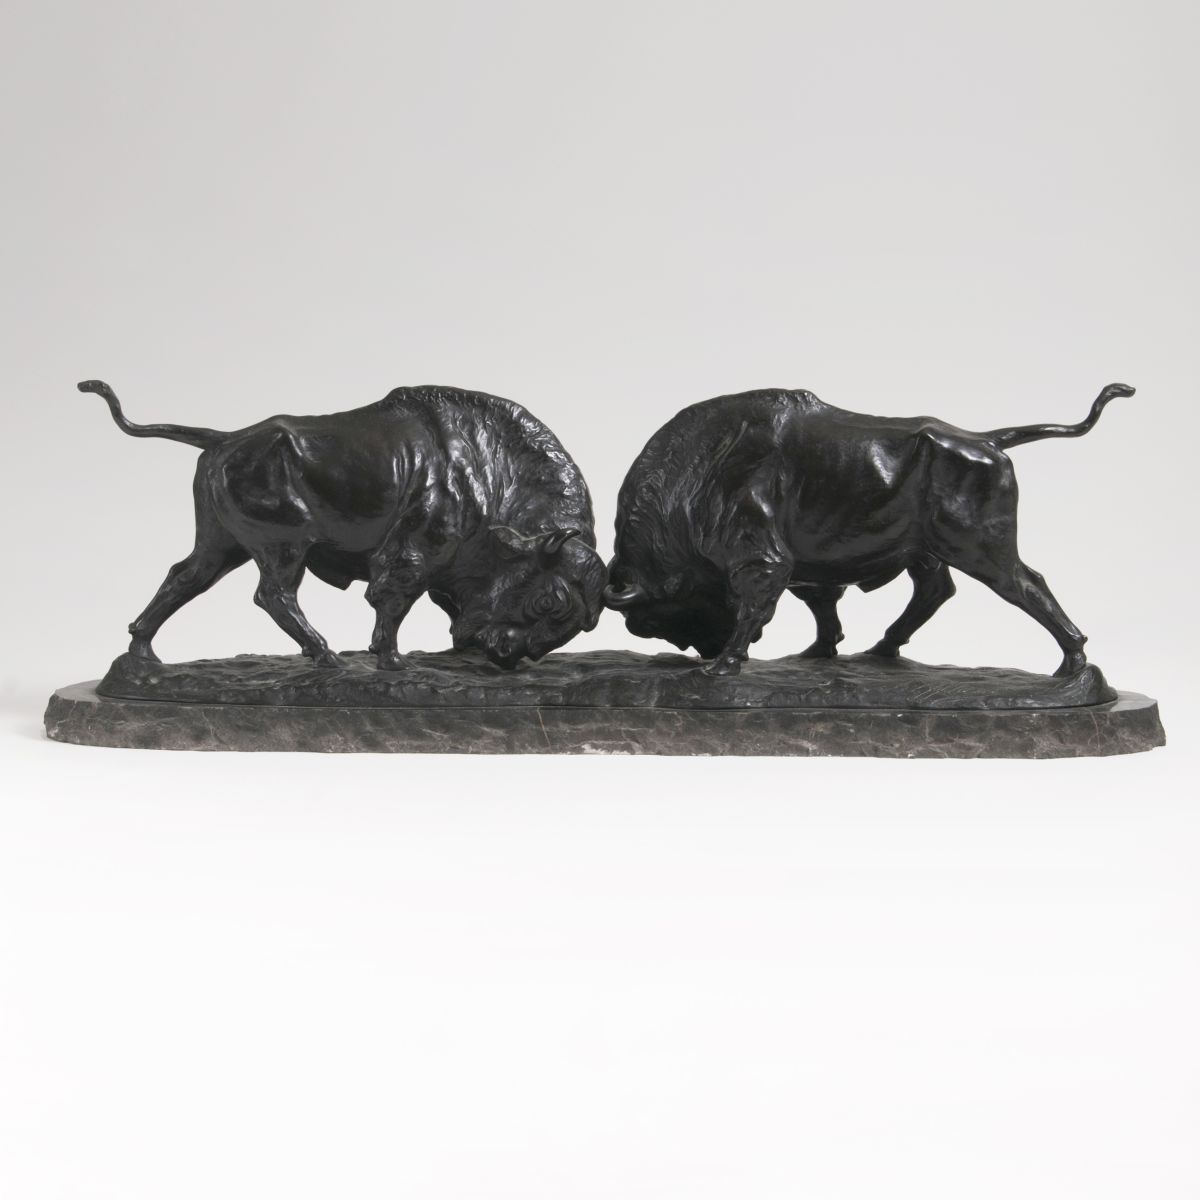 A Bronze Sculpture 'Fighting Buffalos'